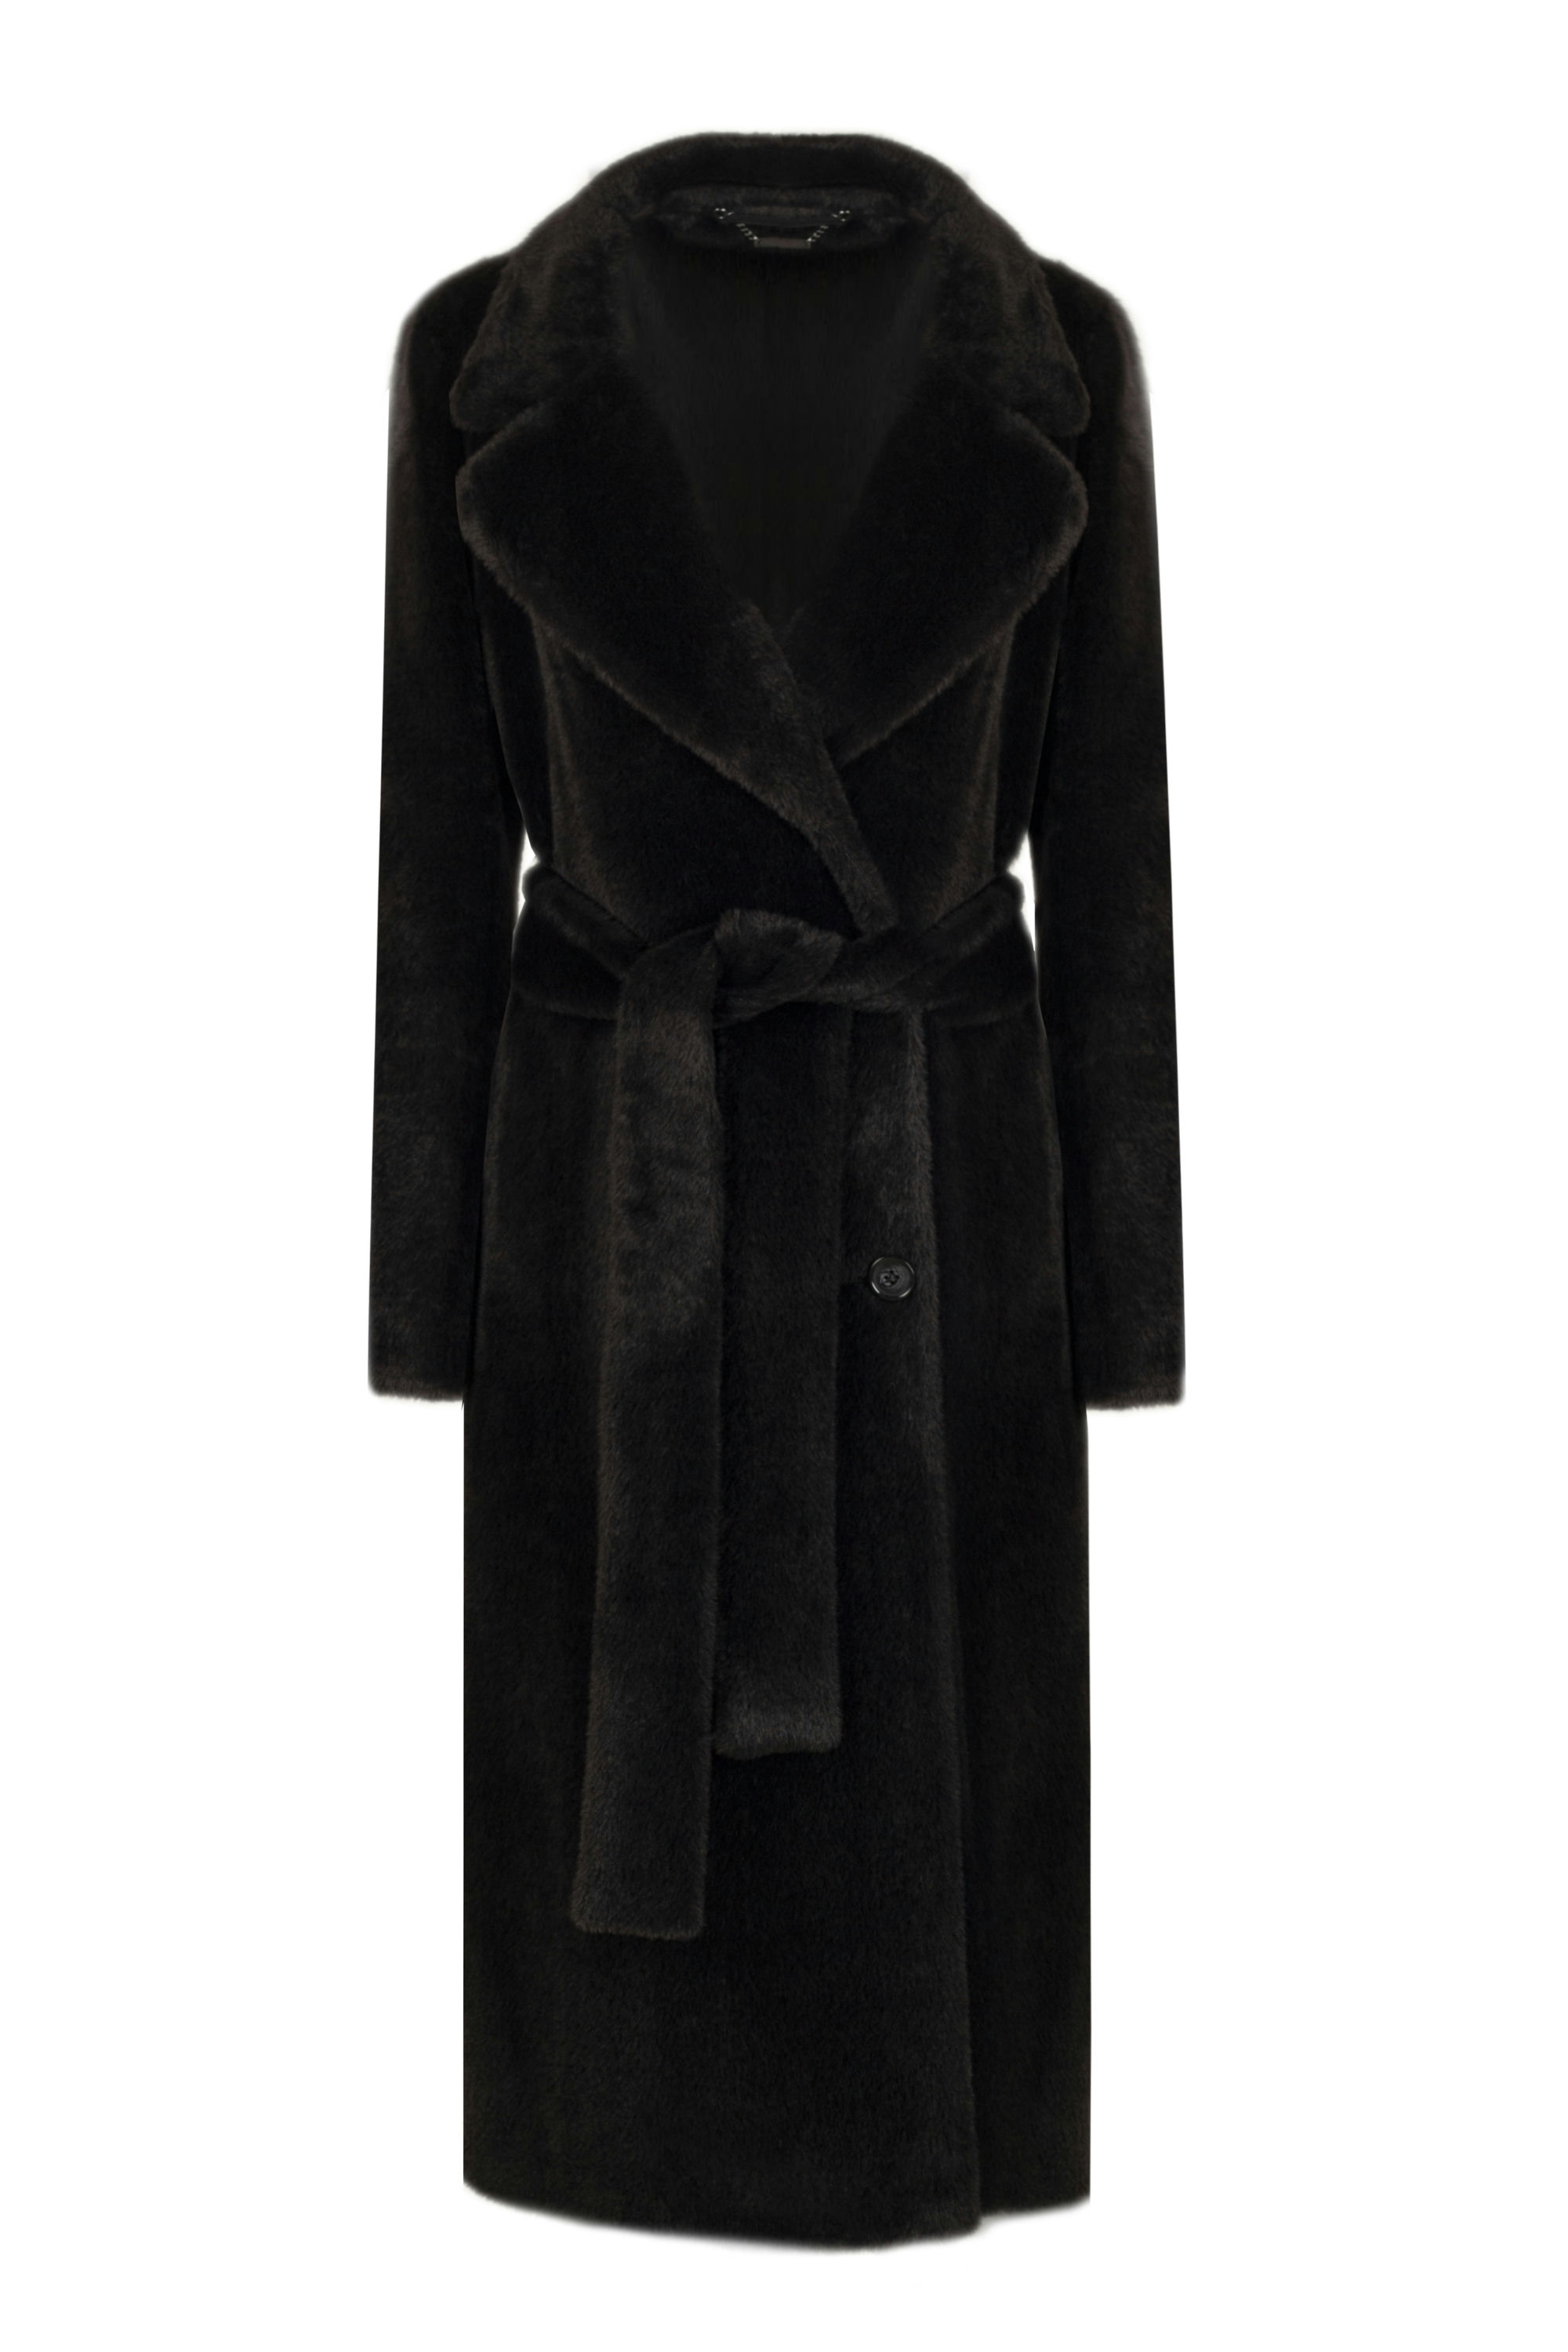 Пальто женское демисезонное 1-13053-2. Фото 1.